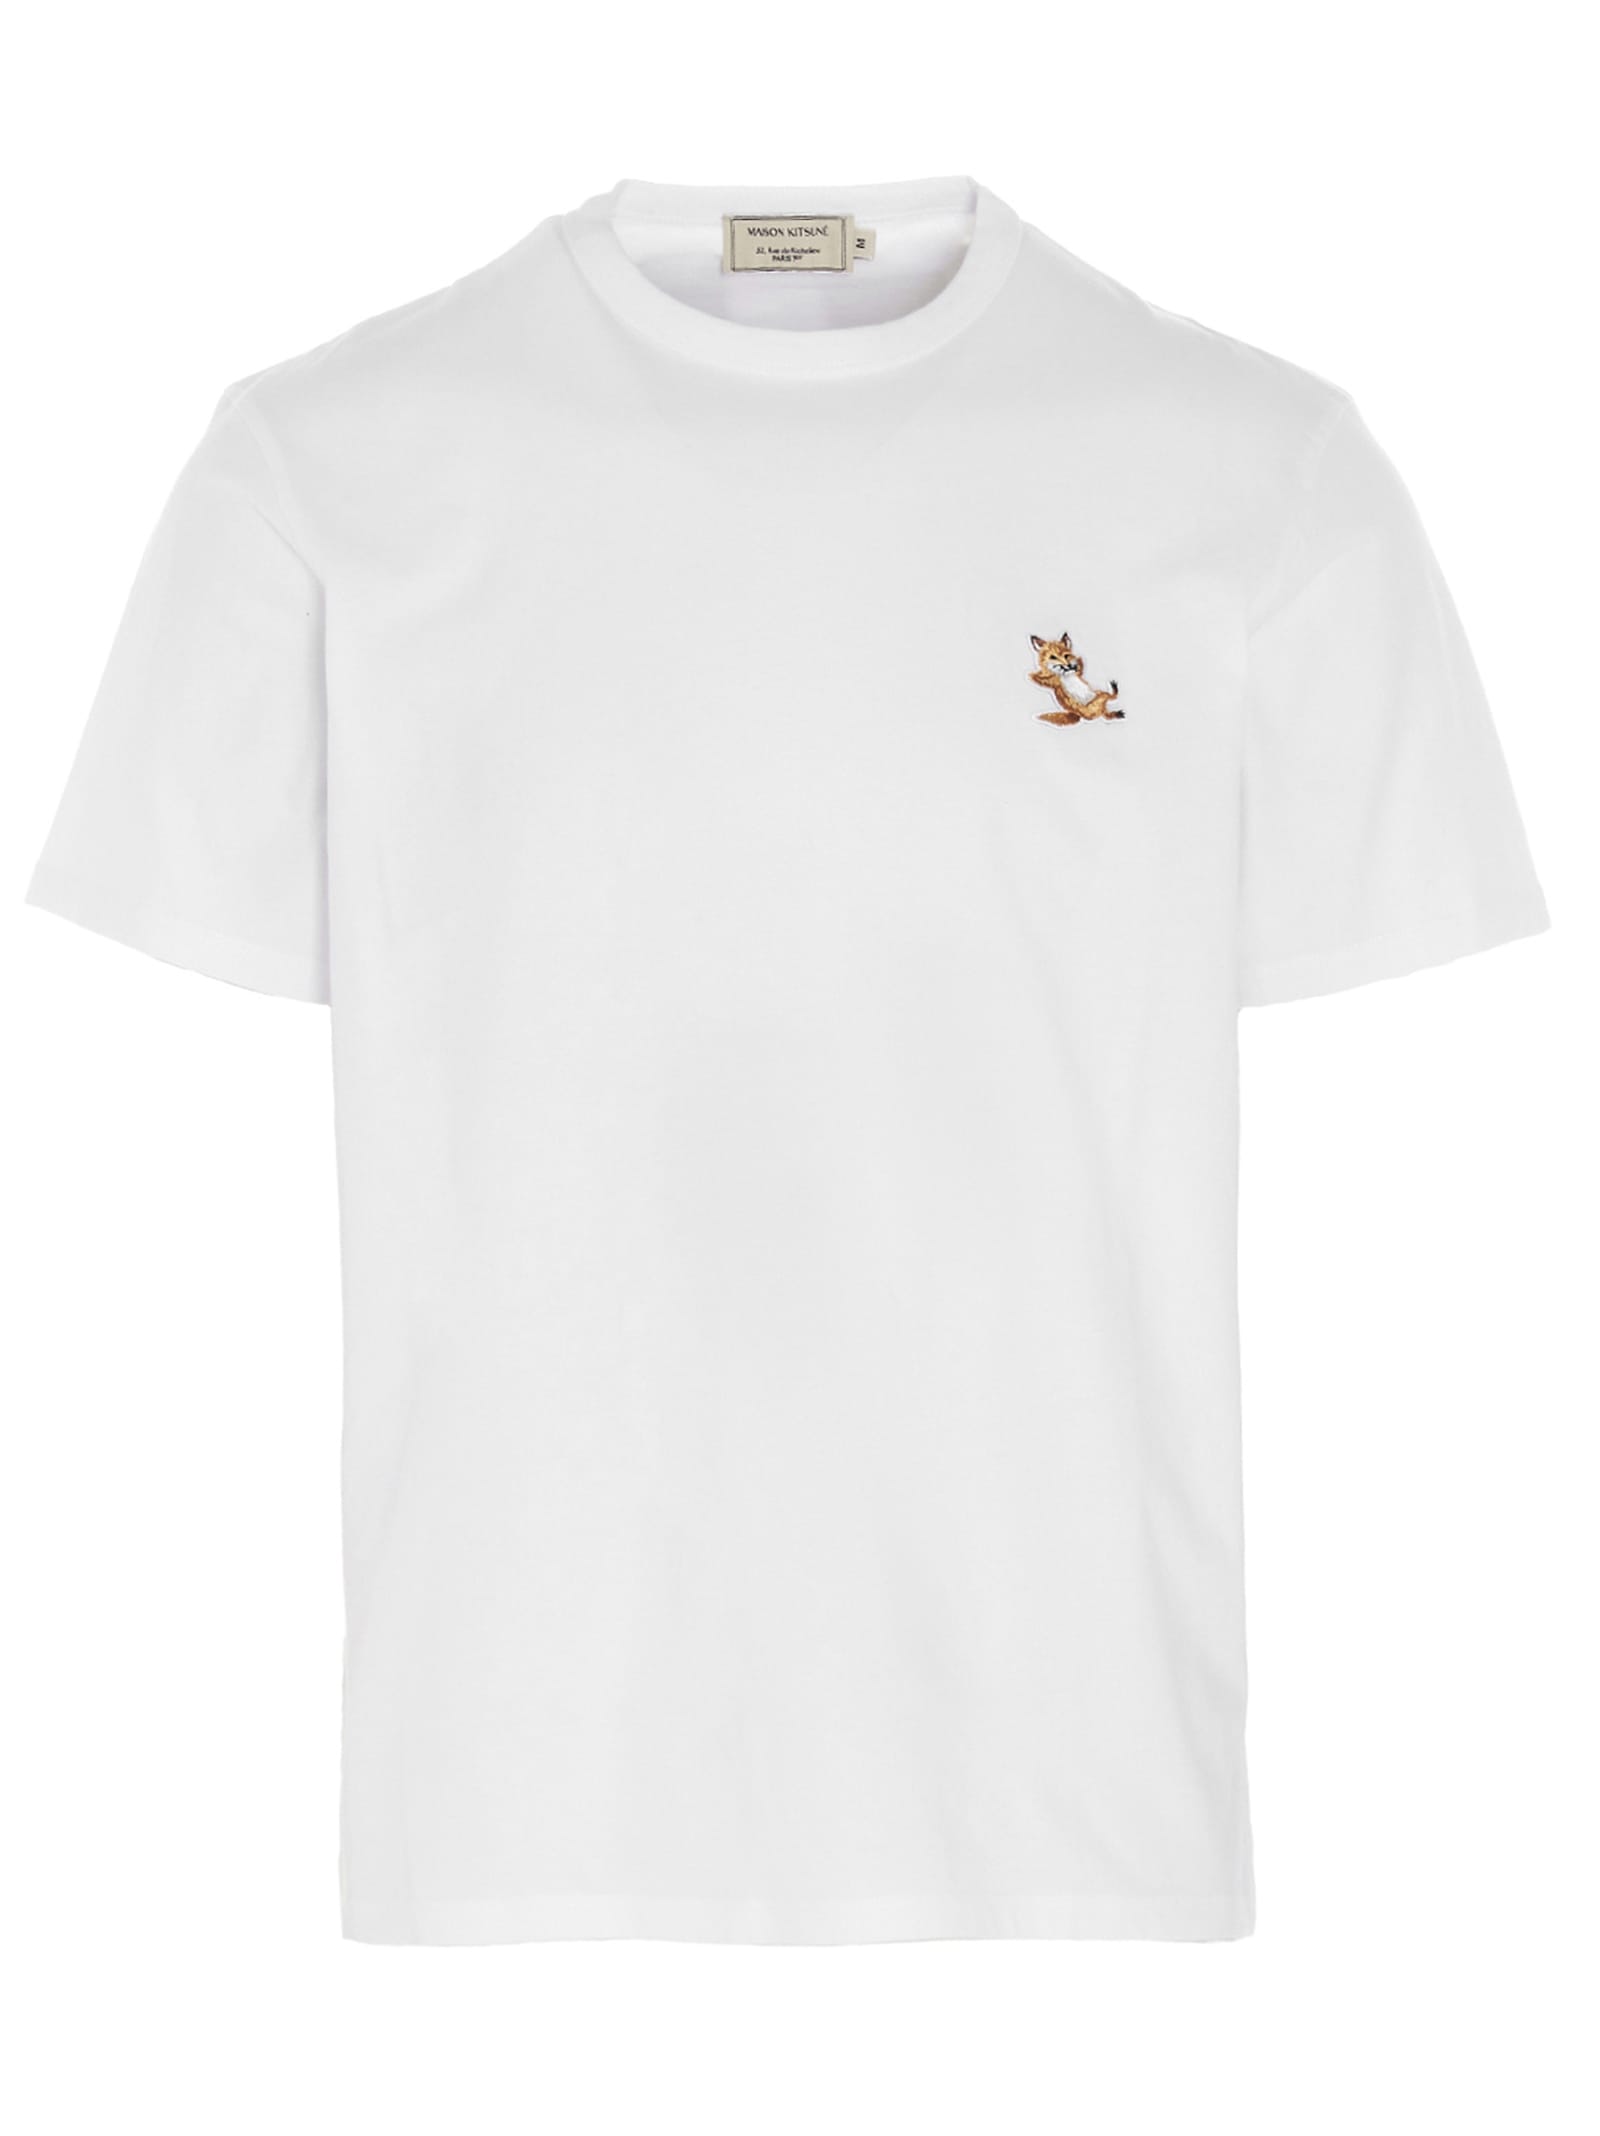 Maison Kitsuné Chillax Fox Cotton T-shirt In White | ModeSens